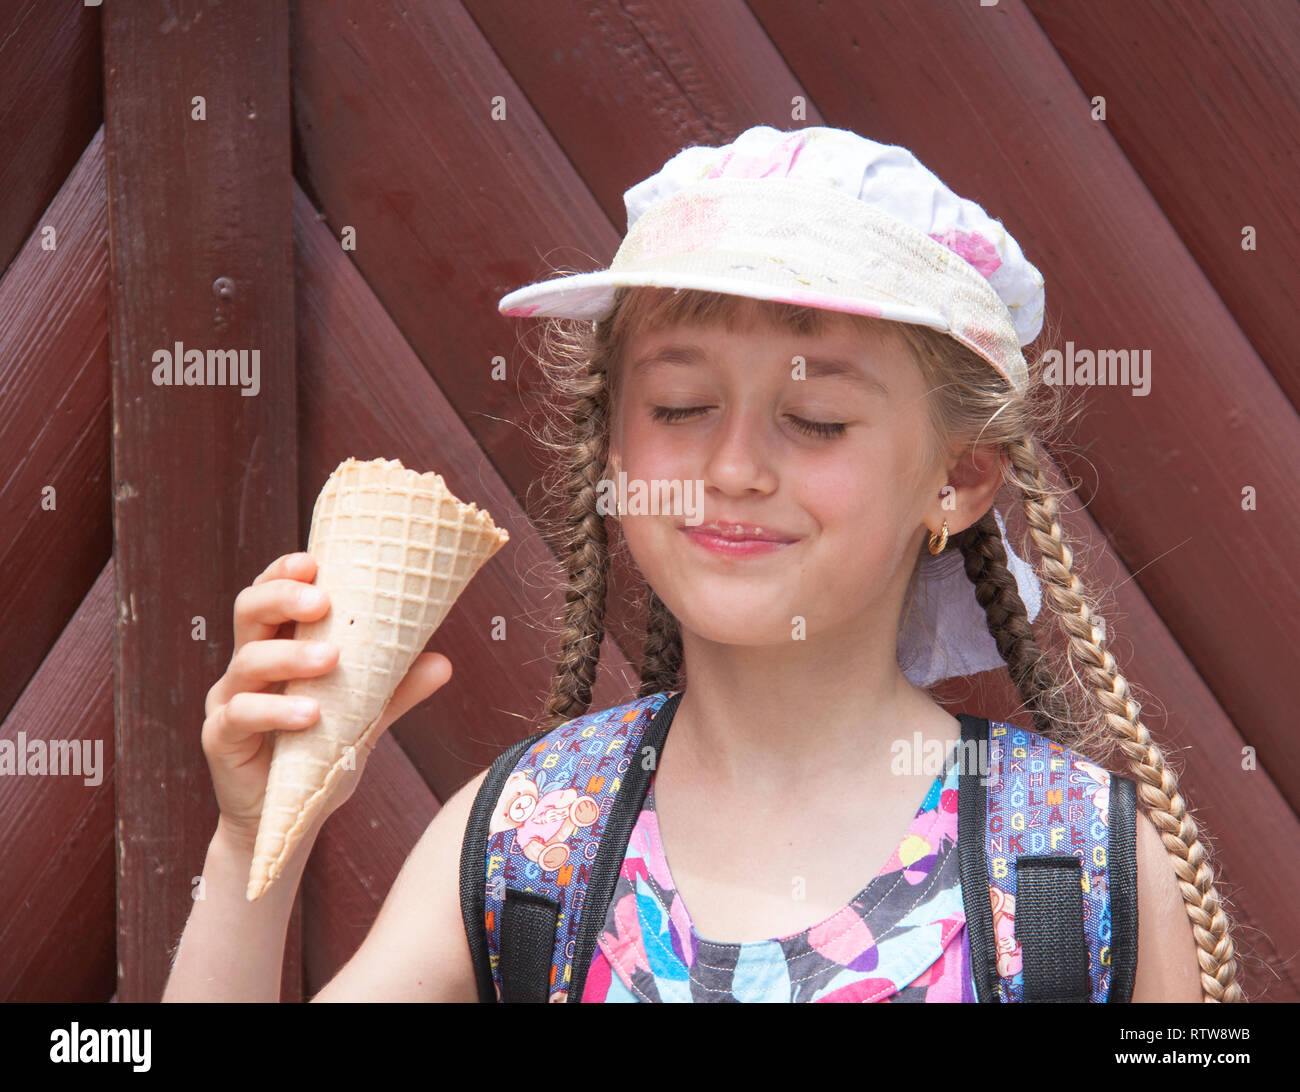 girl in a cap eats ice cream Stock Photo